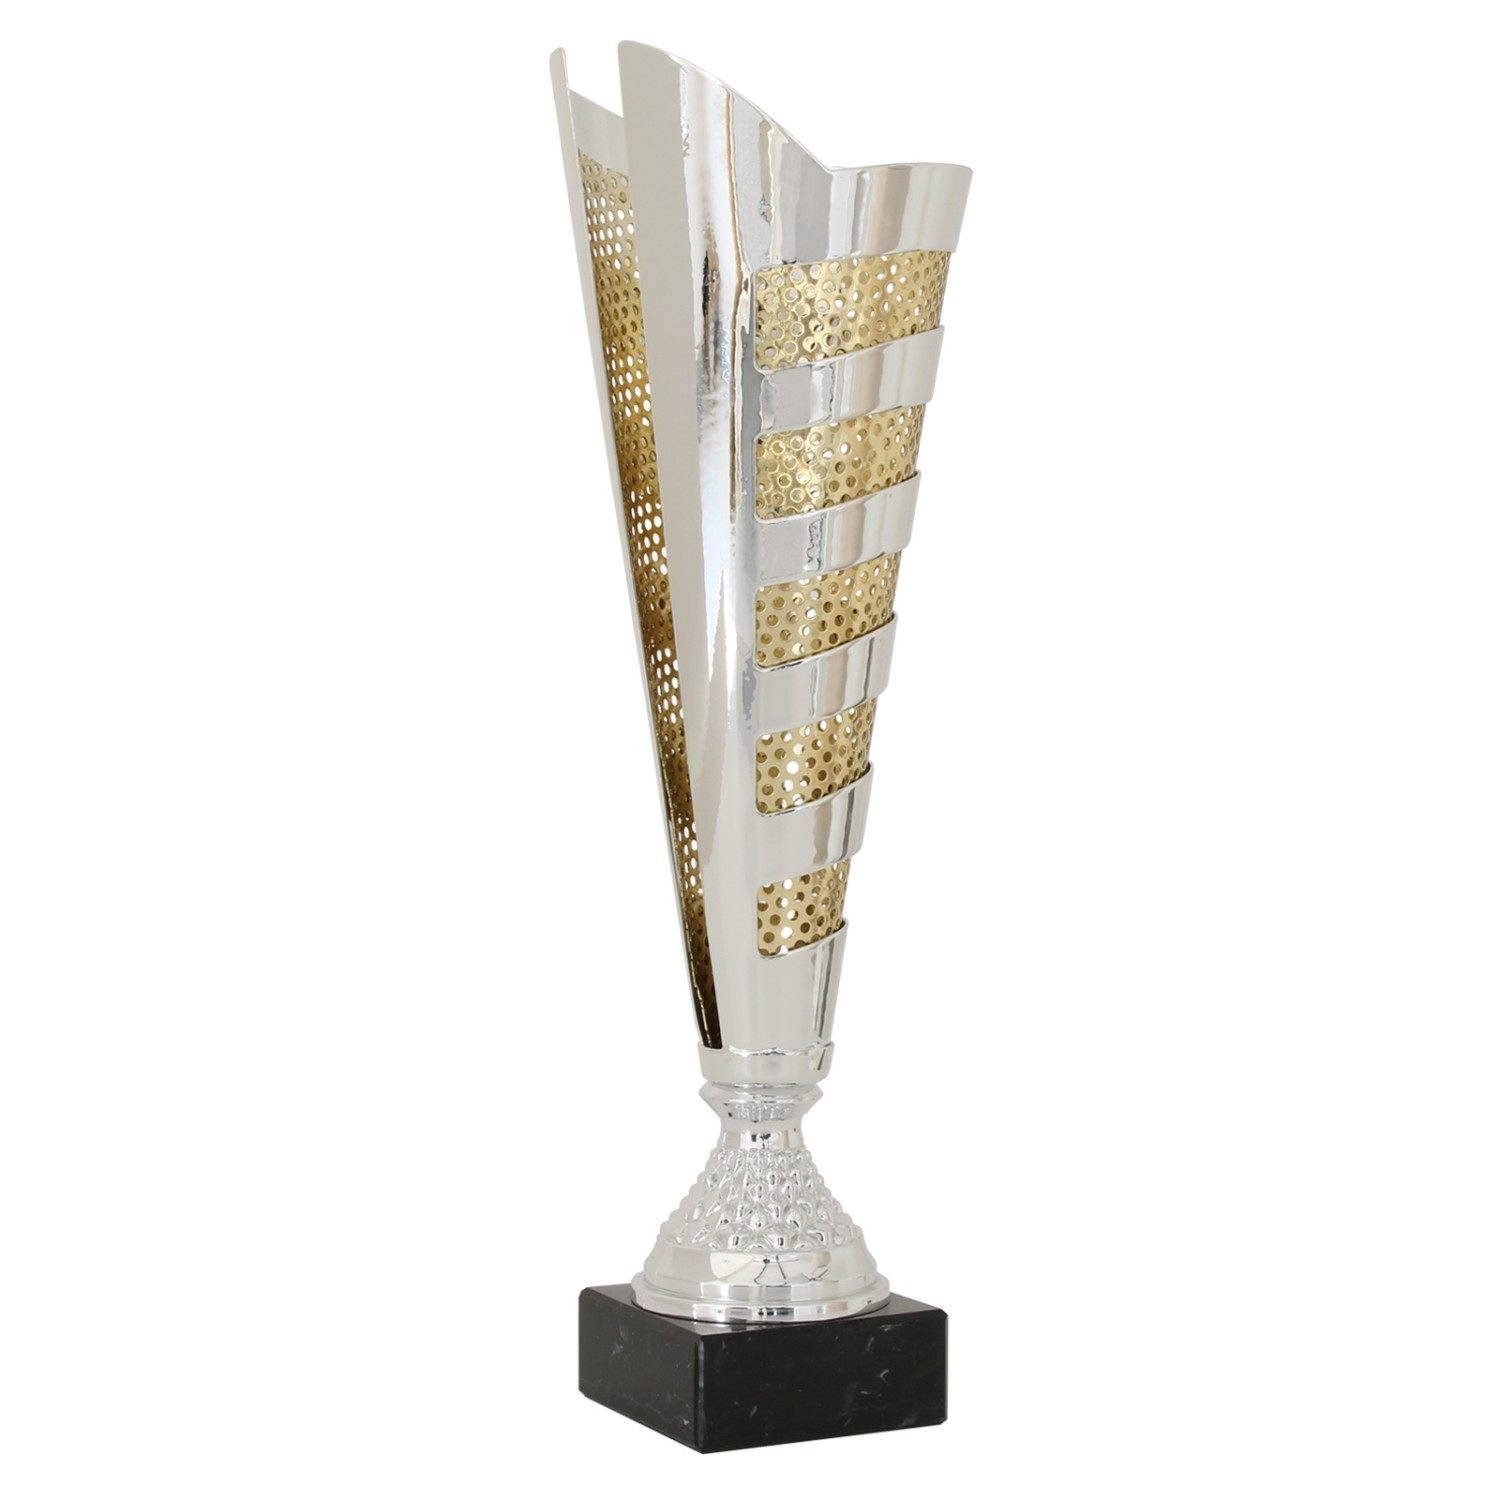 1. Foto Pokal Pokalset CLUNY Metall silber gold 3 Größen mit Gravur (Größe: Größe L 42 cm)